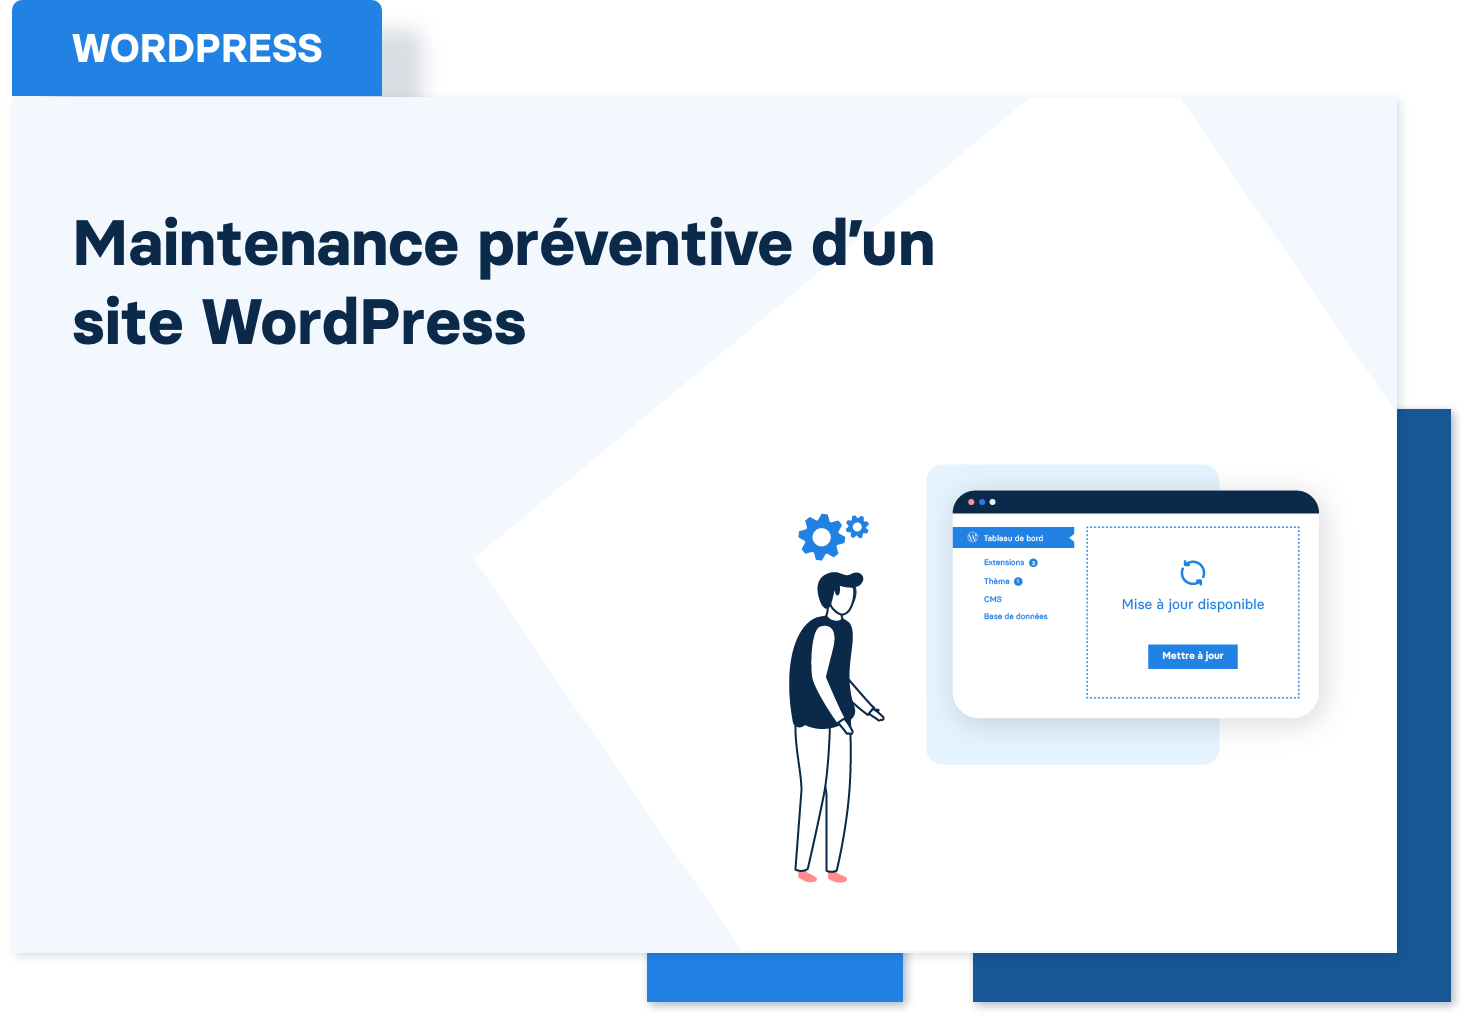 Maintenance préventive WordPress